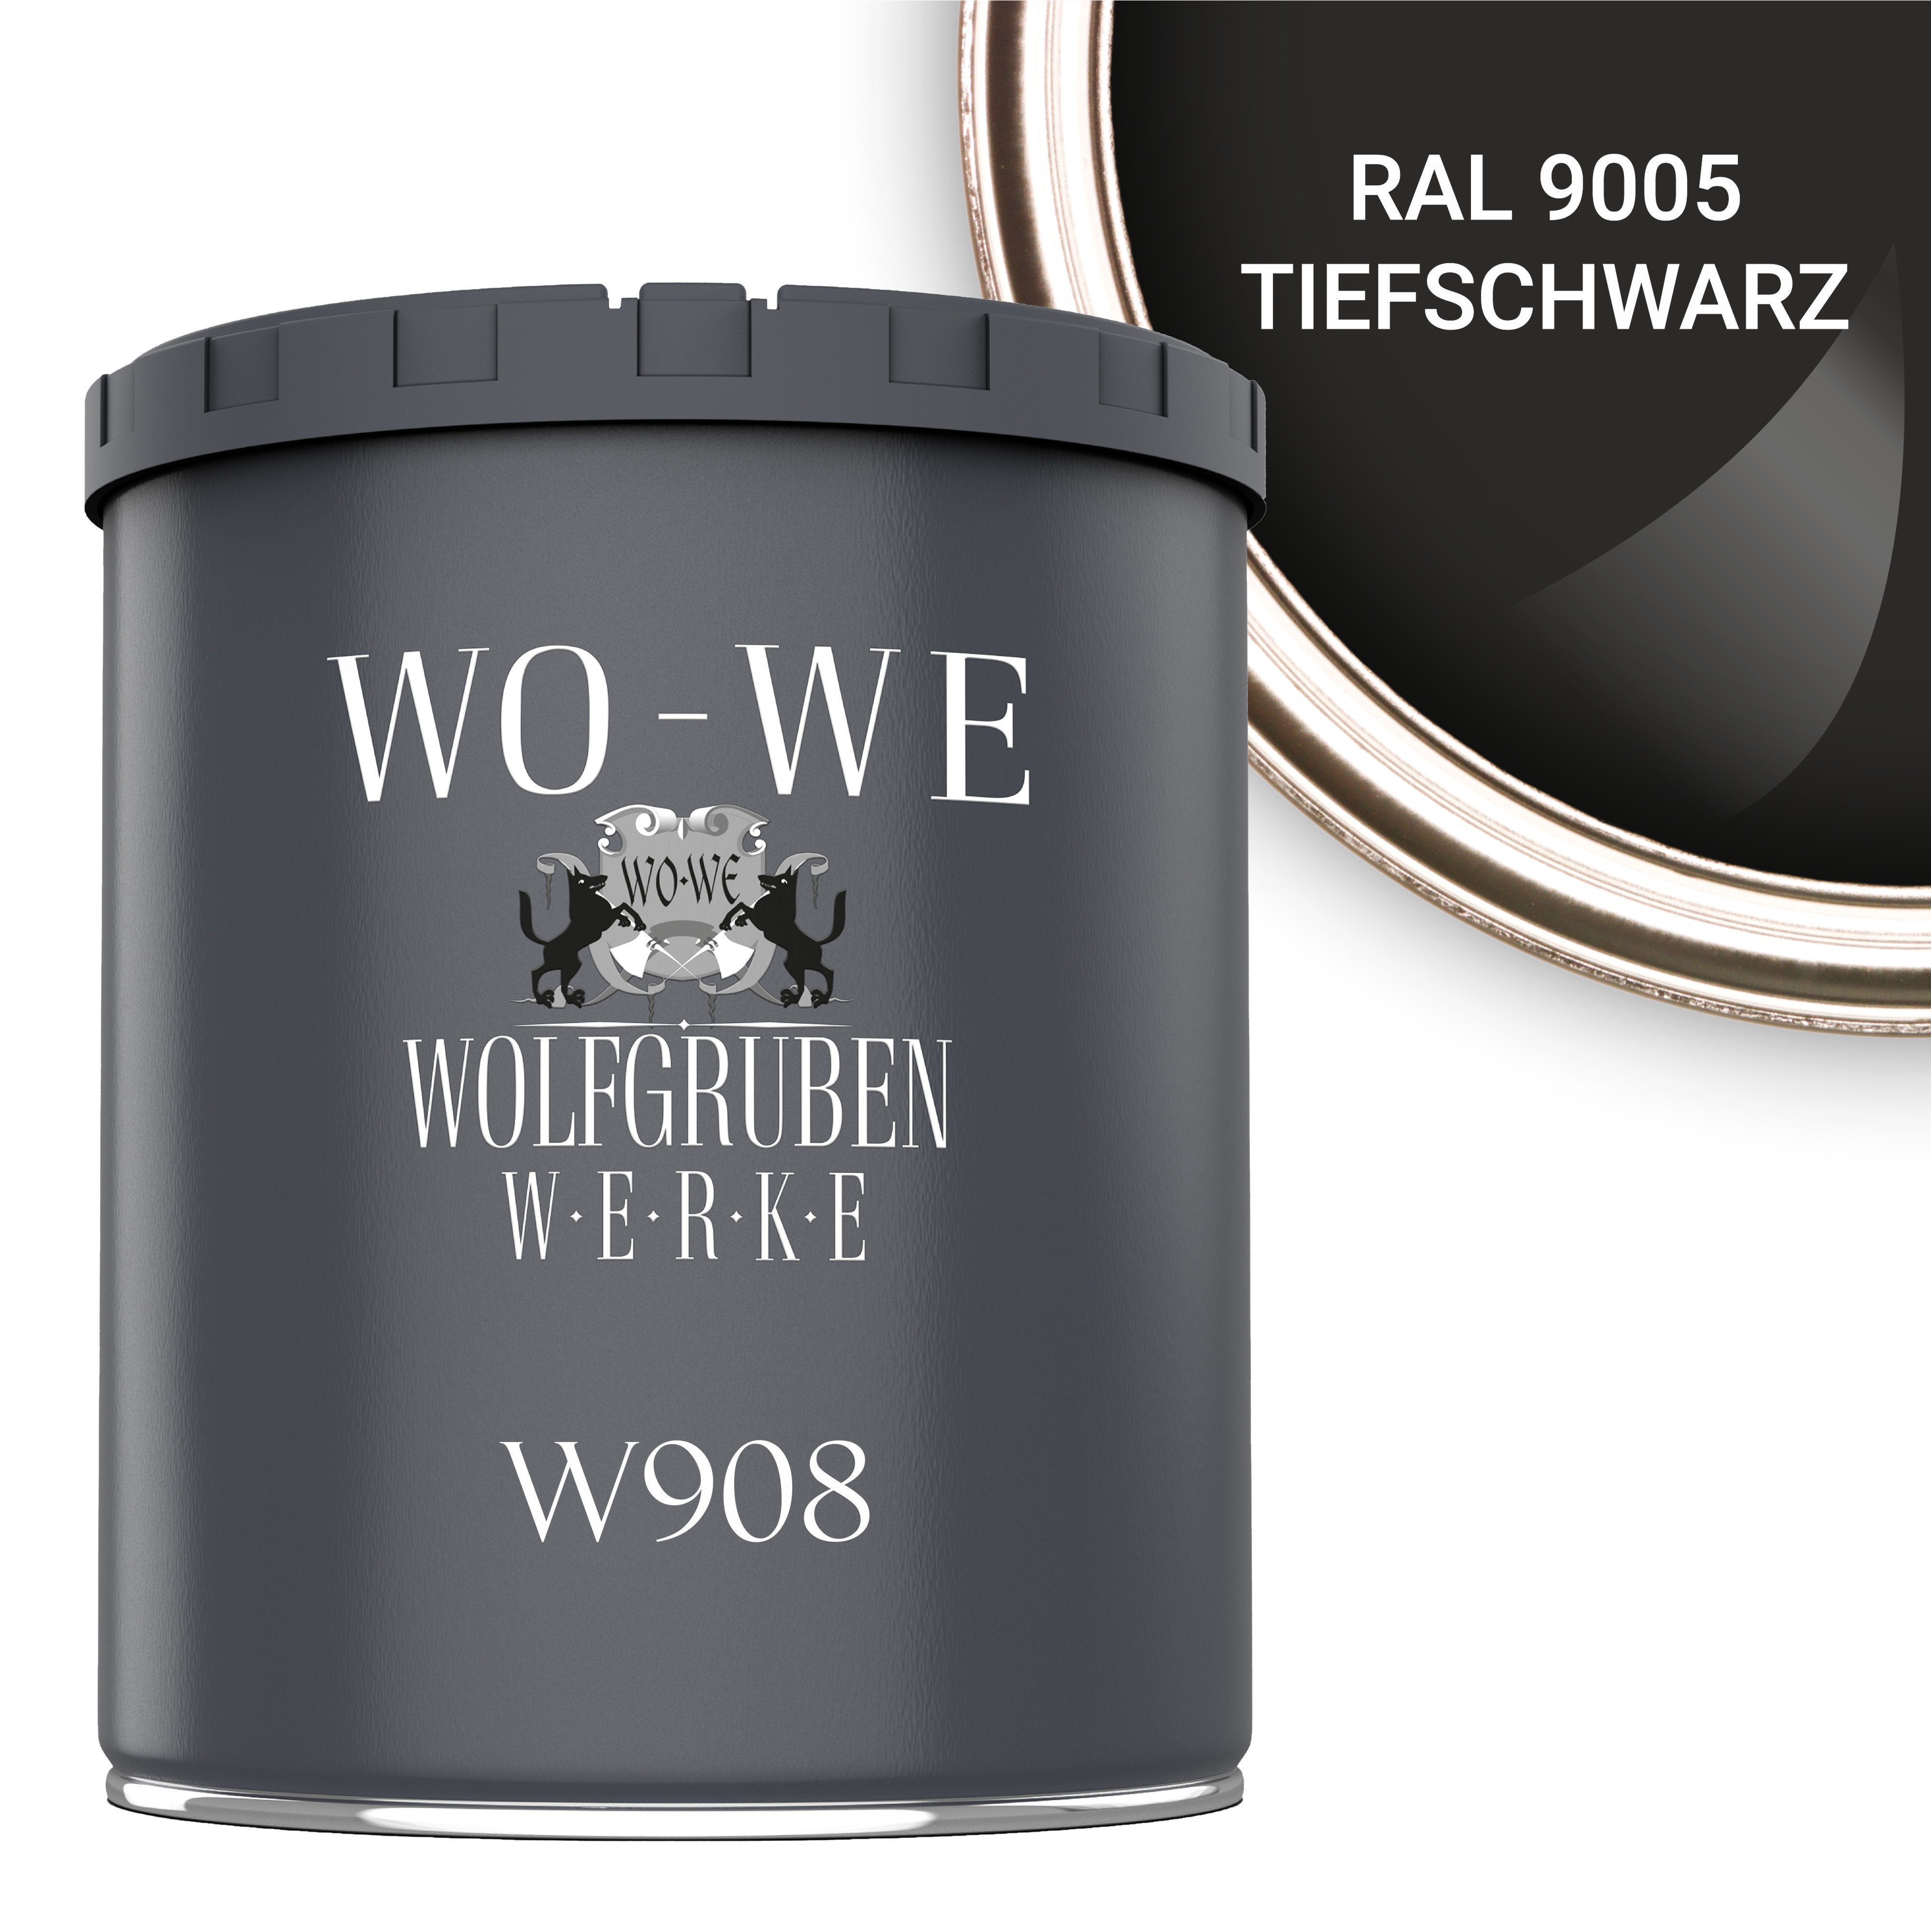 WO-WE Metallschutzlack 4in1 Metalllack Metallfarbe Metallschutzfarbe W908, 1L - 2,5L, Außenbereich RAL 9005 Tiefschwarz